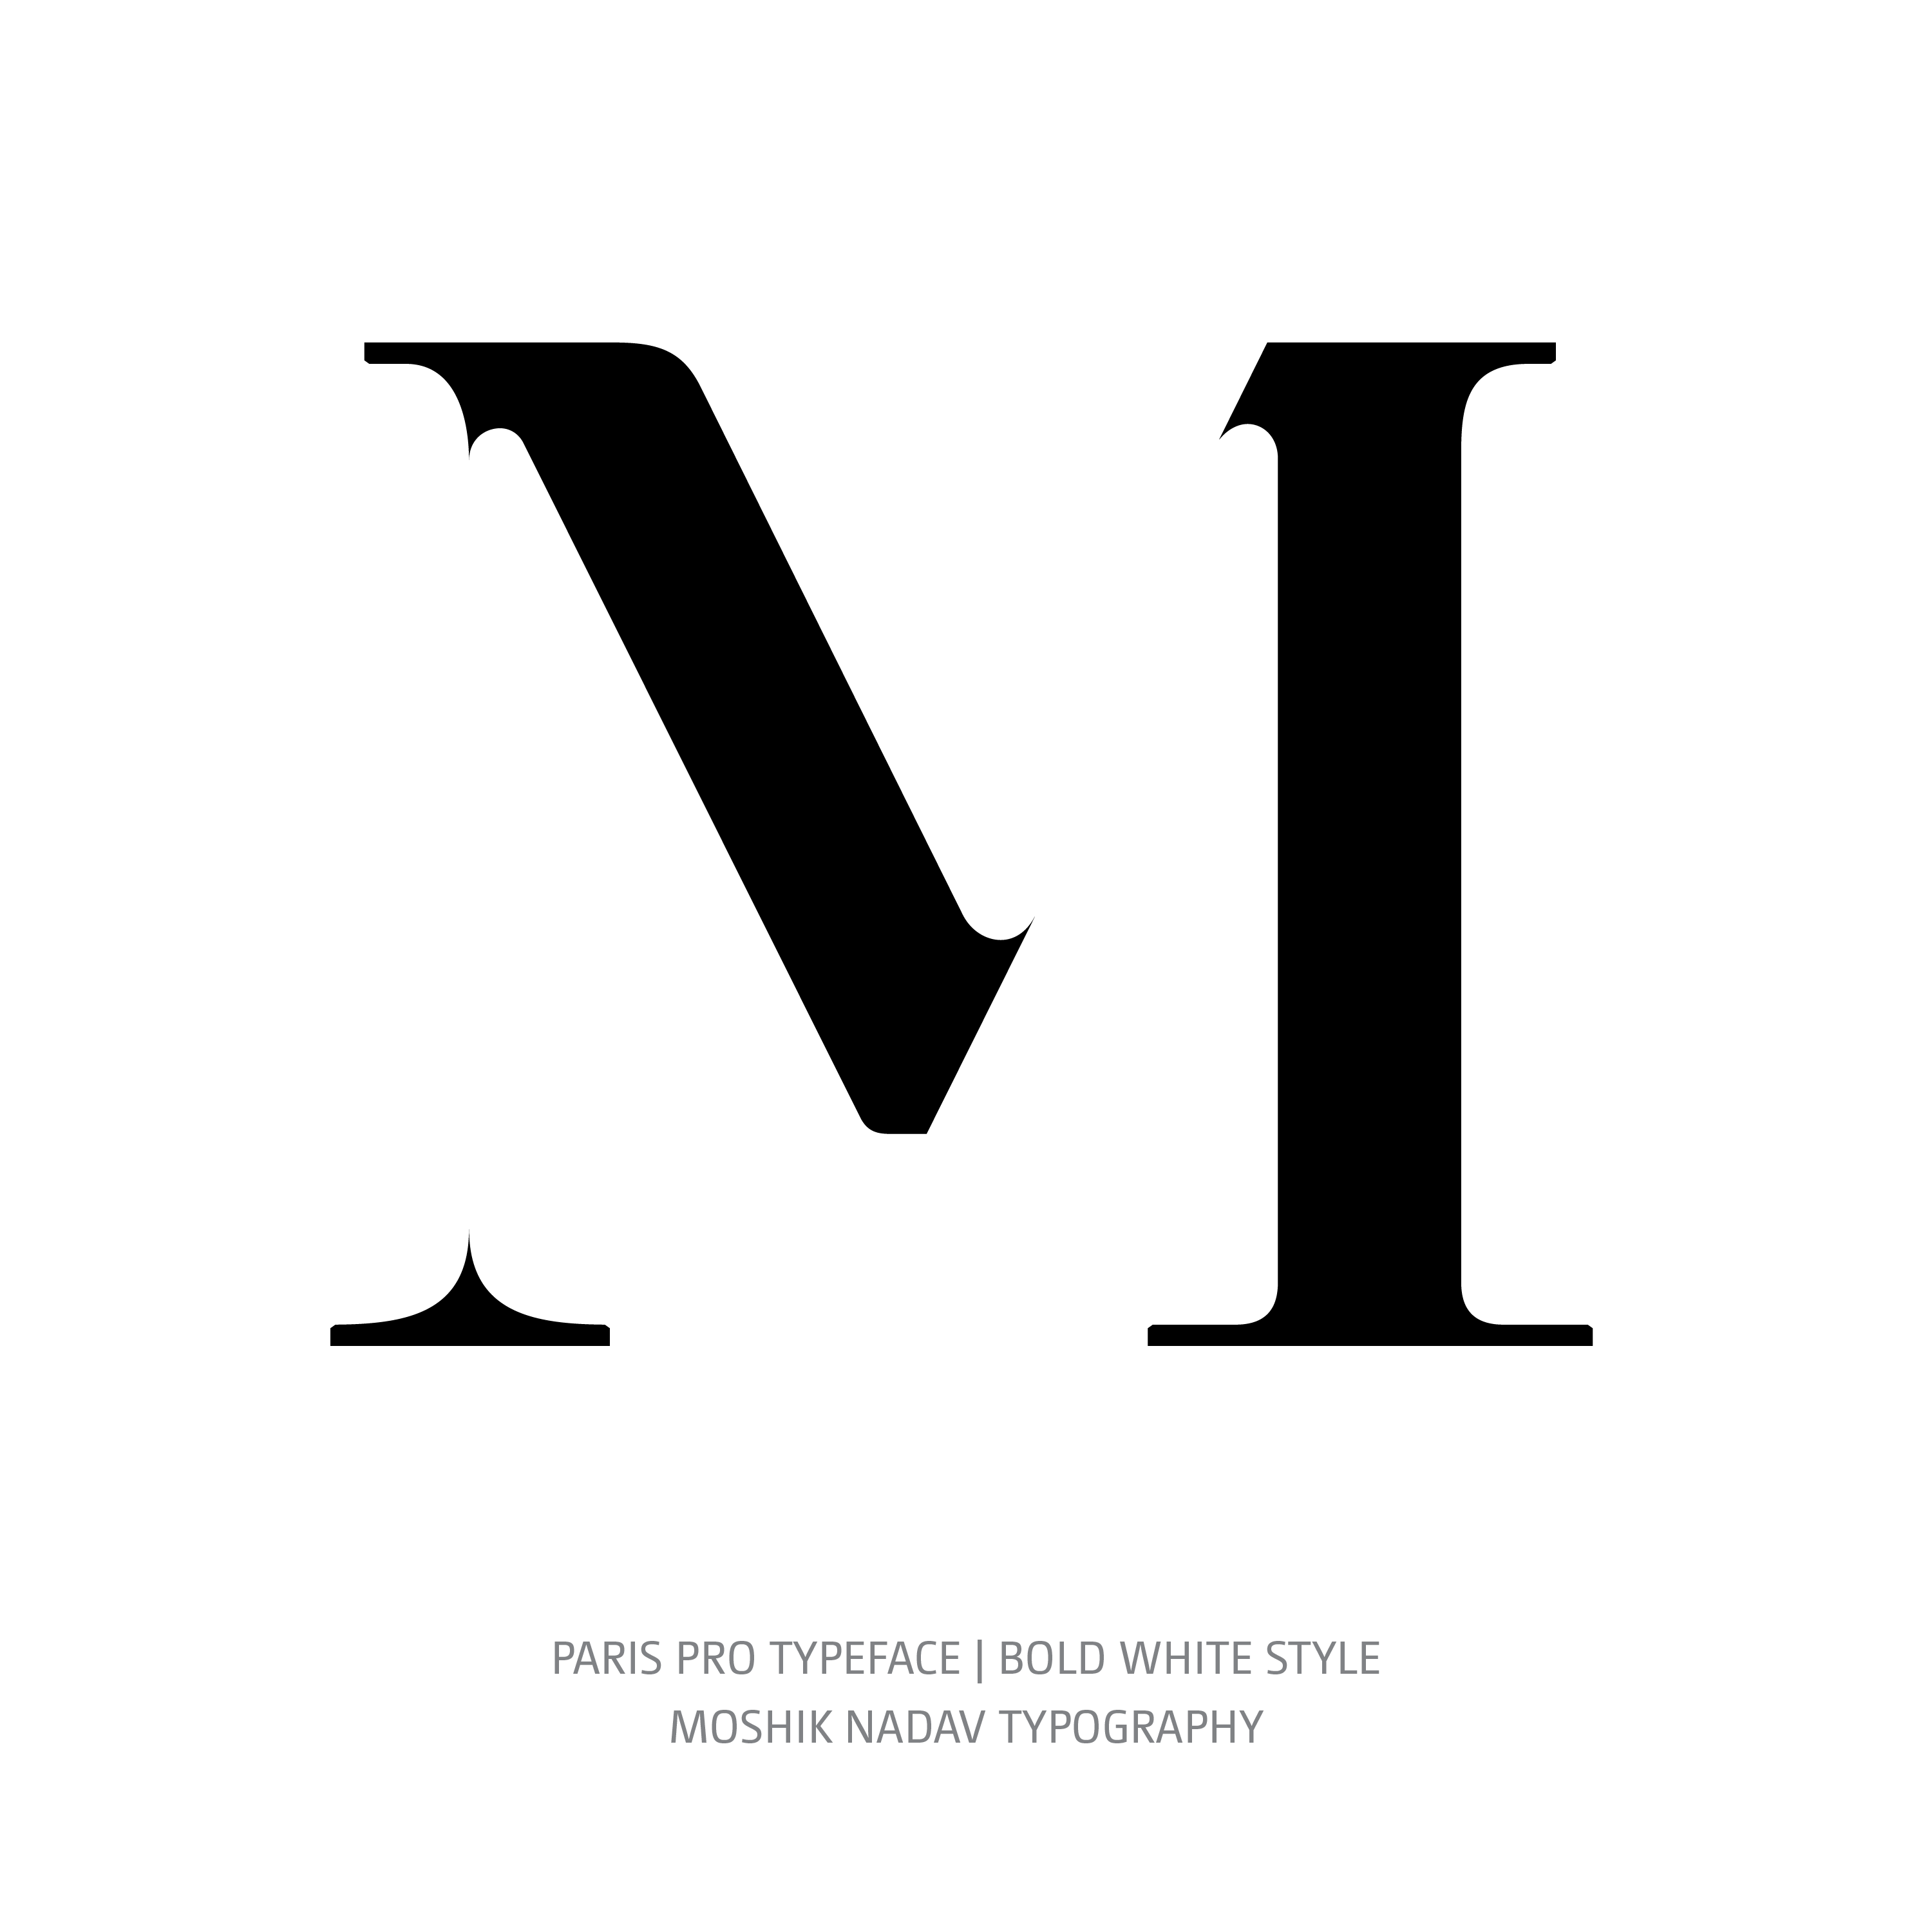 Paris Pro Typeface Bold White M